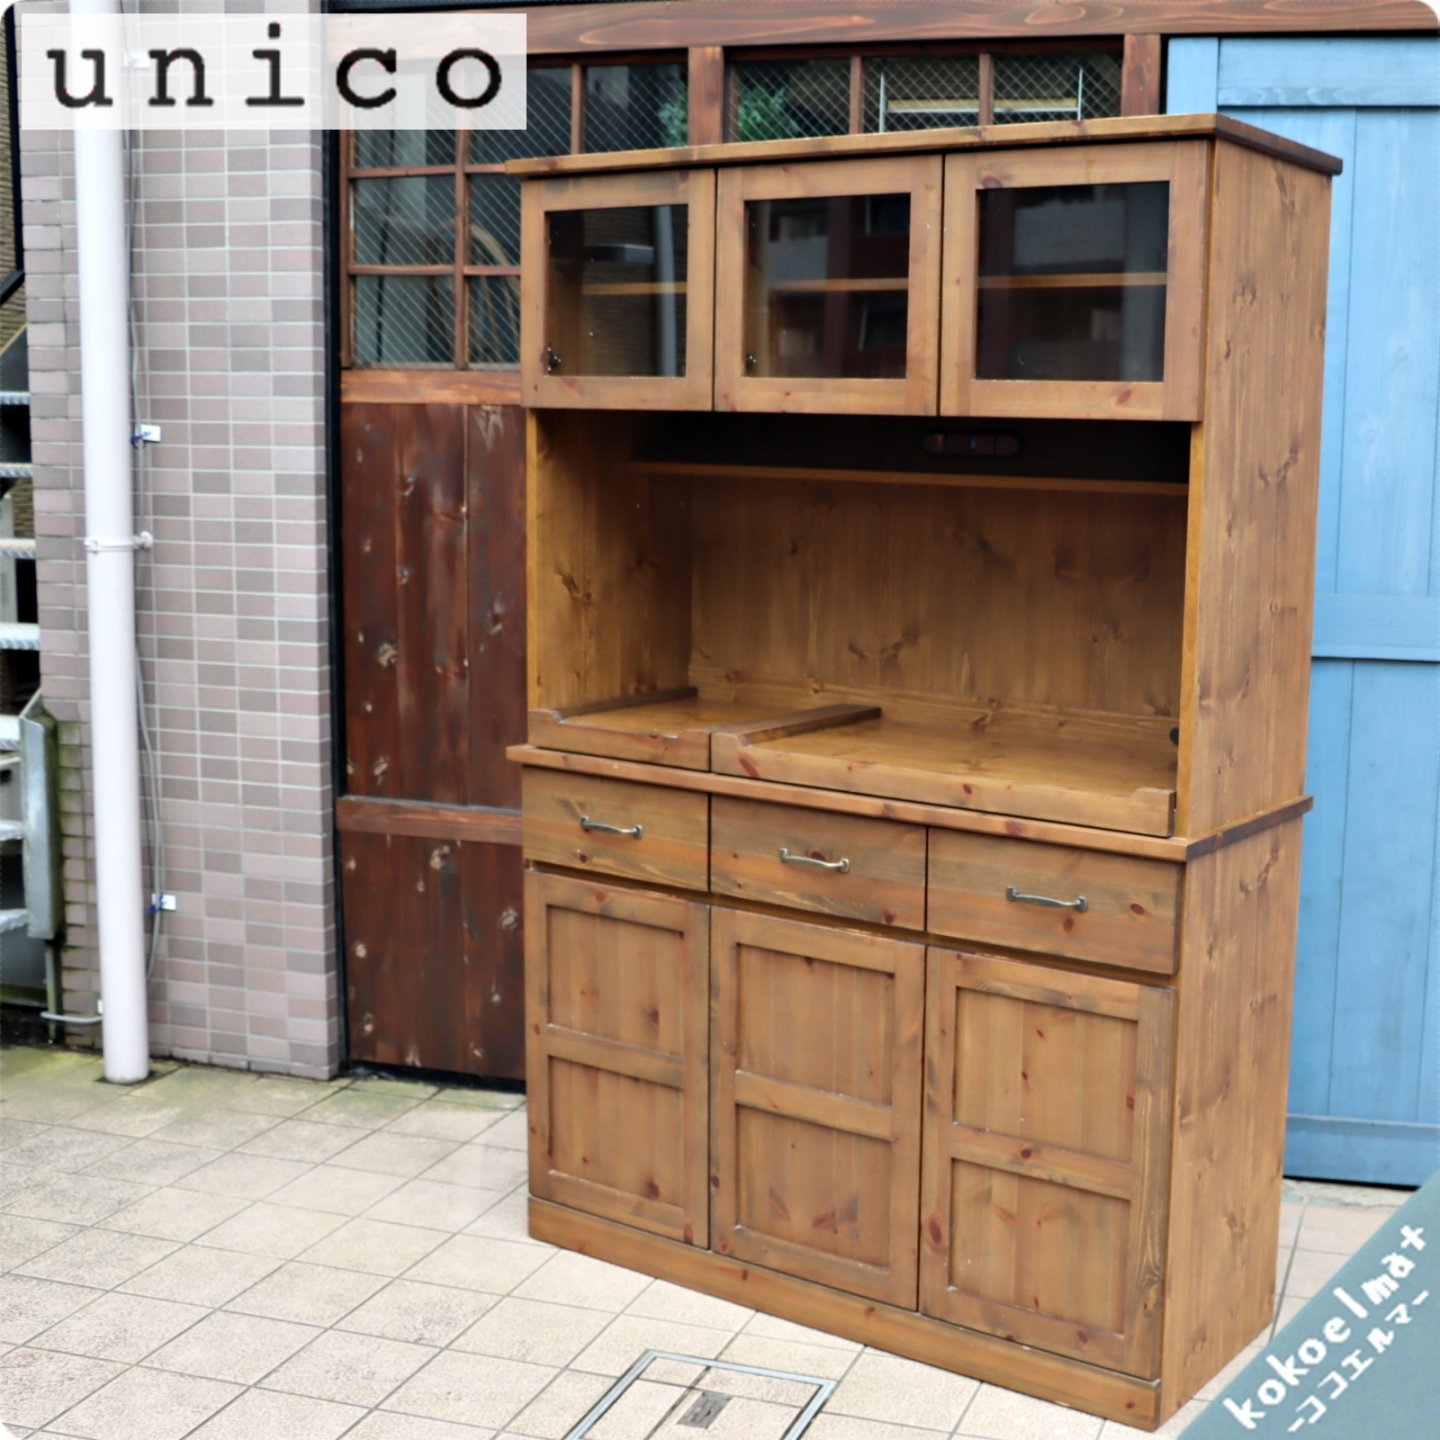 限定販売格安 unico ウニコ オトゥール 食器棚 S キッチンボード AUTEUR 収納/キッチン雑貨